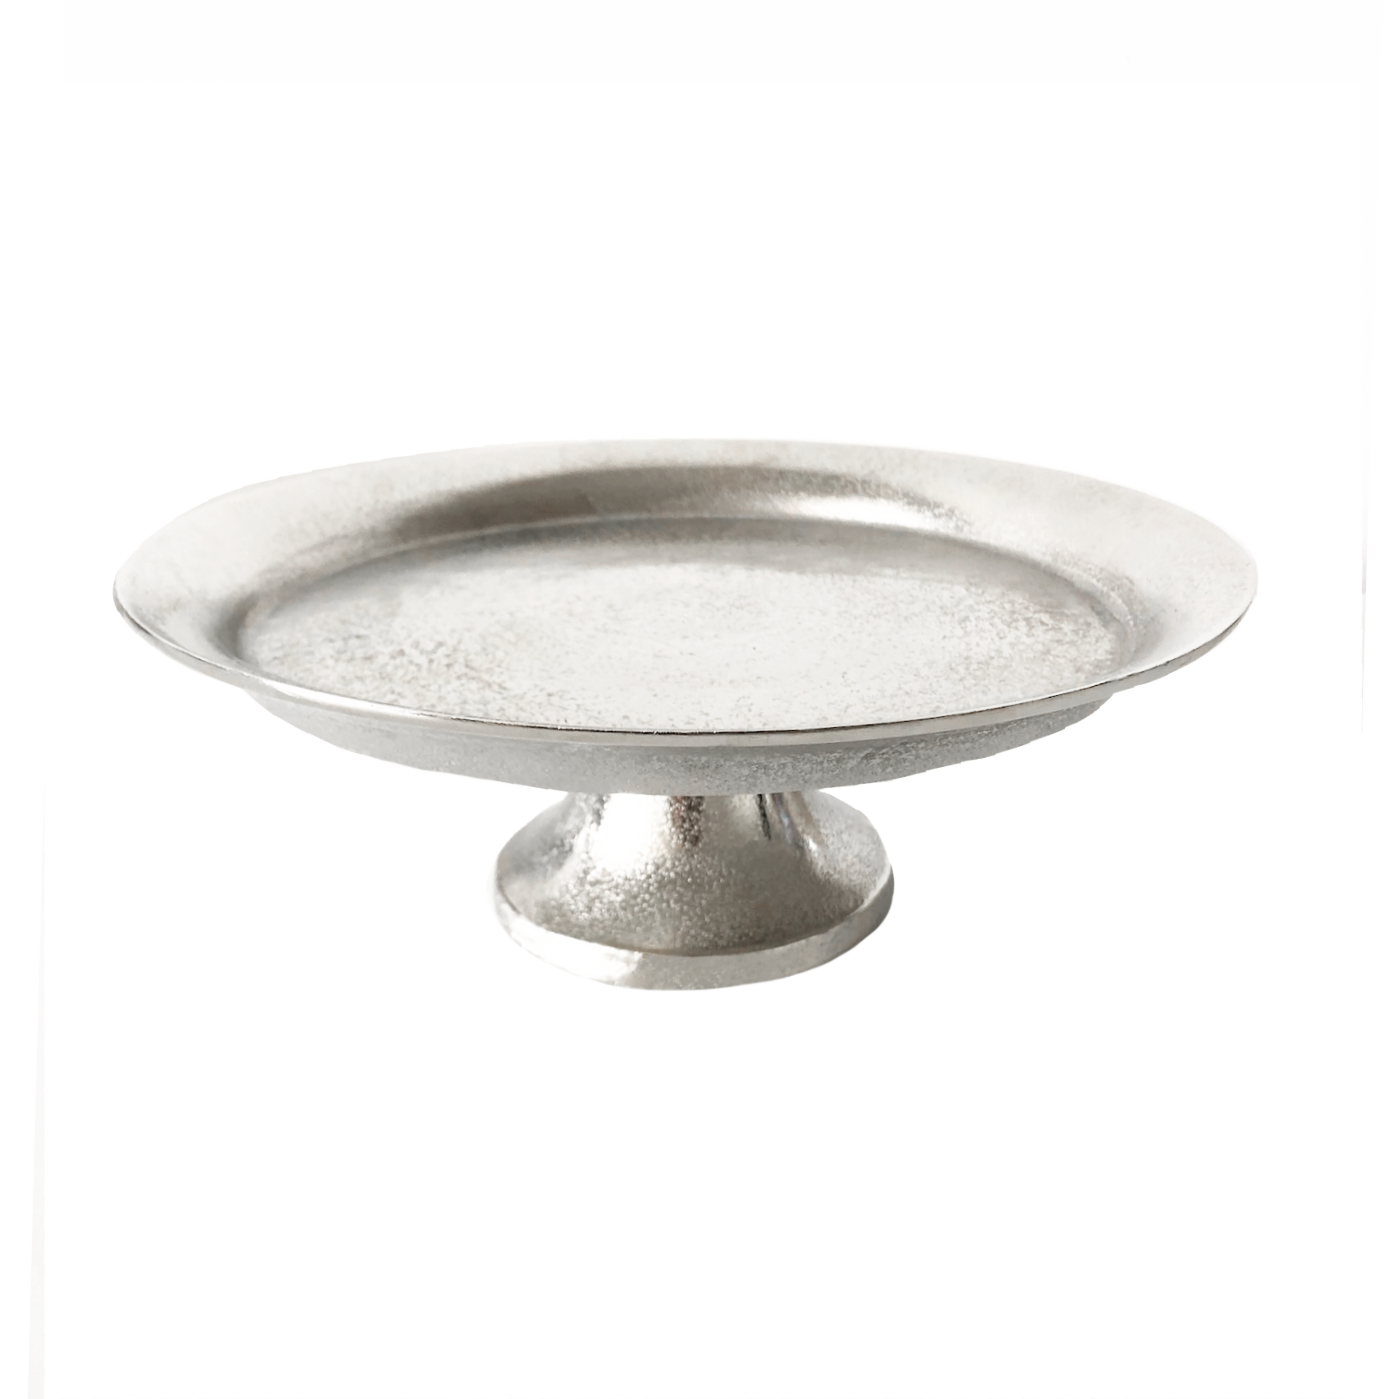 Etagere Glasschale Fuß Silber Auflage Eis Sahne Zucker Trüffel Konfitüre Clotted